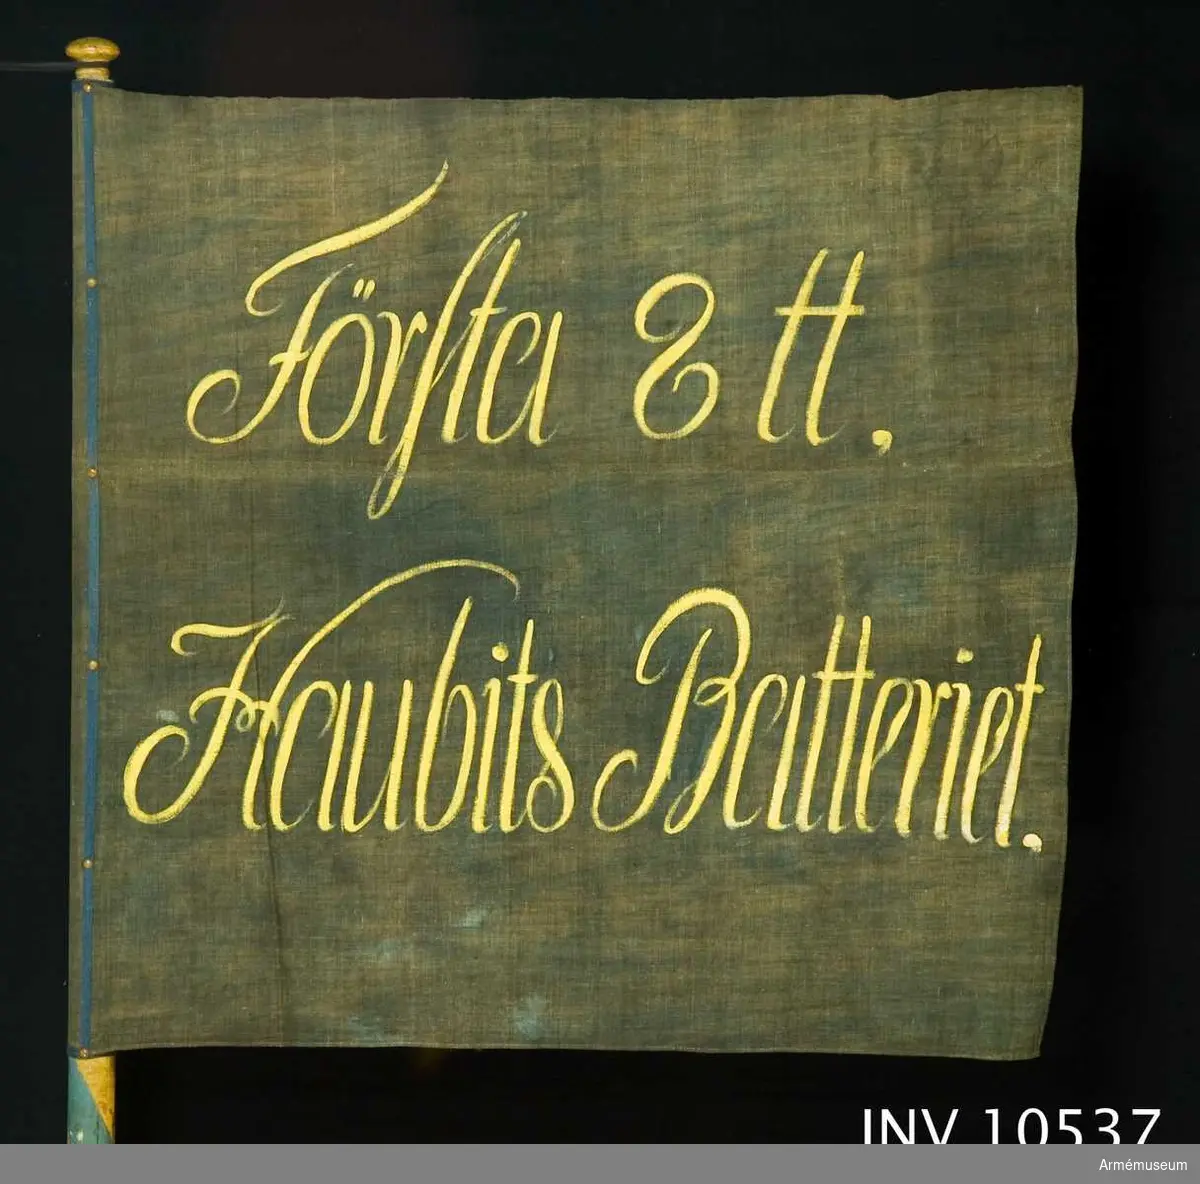 Grupp B.

Duk med inskrift: "Första 8 tt Haubits Batteriet". Svart med gul text.